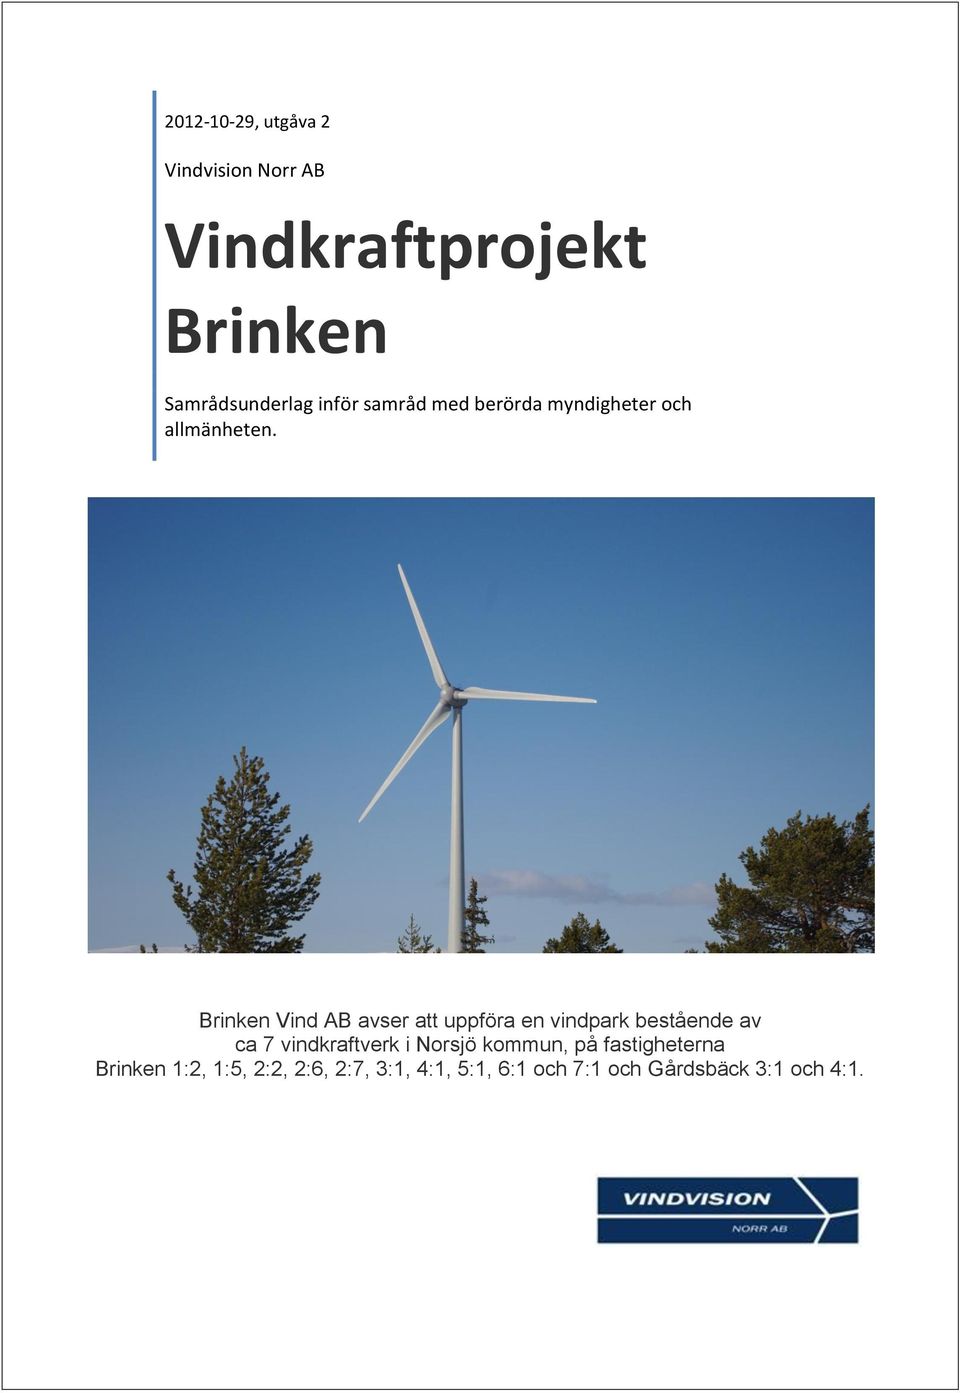 Brinken Vind AB avser att uppföra en vindpark bestående av ca 7 vindkraftverk i